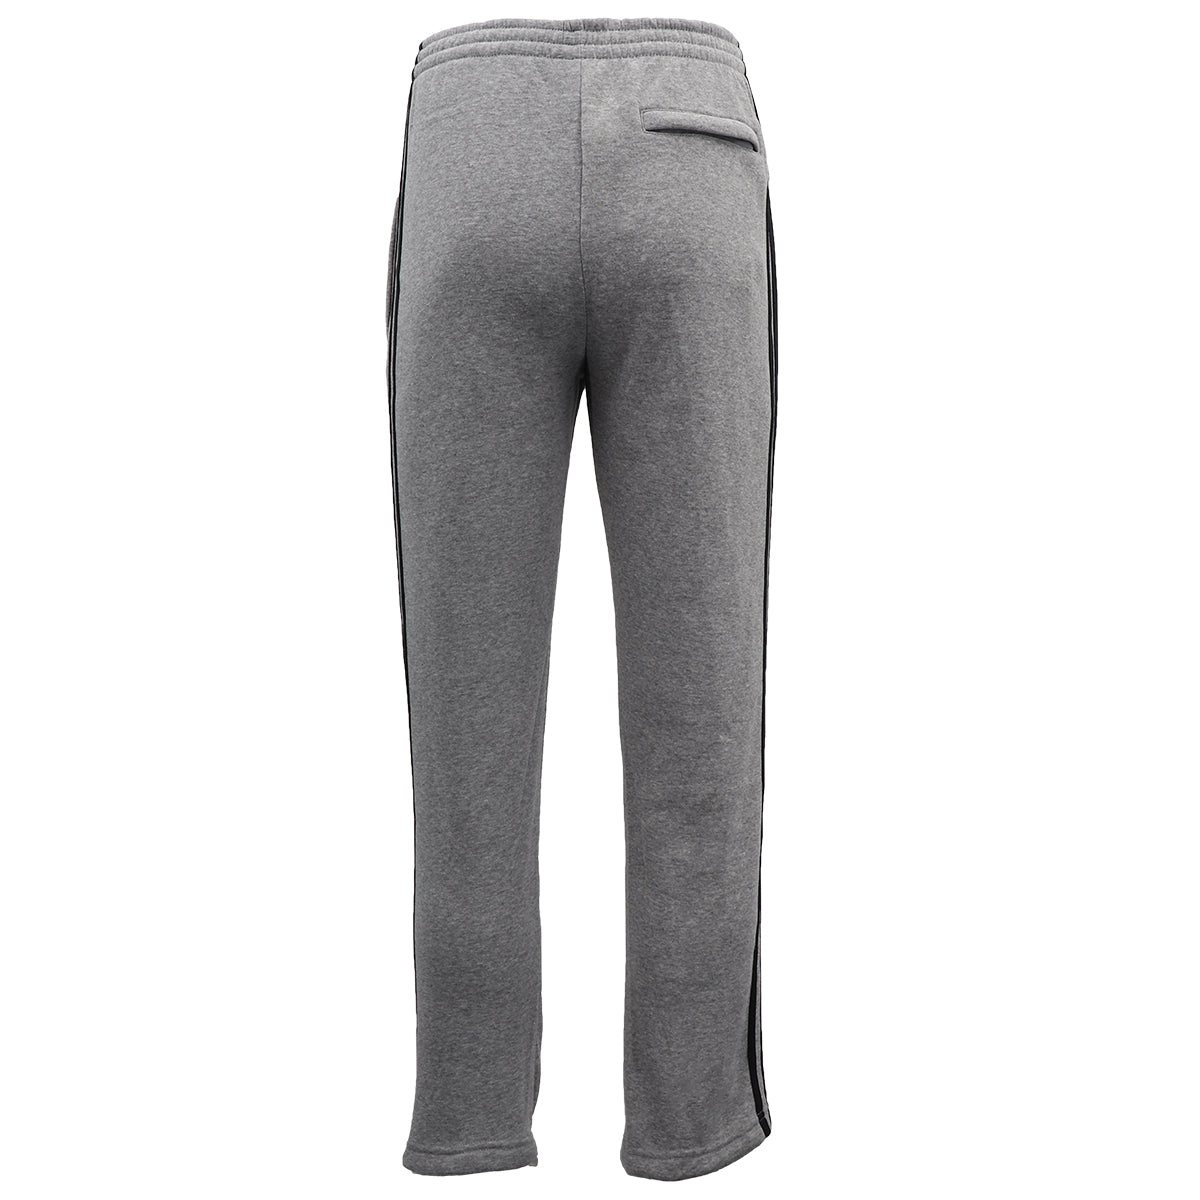 Men's Fleece Casual Sports Track Pants w Zip Pocket Striped Sweat Trousers S-6XL, Black, 6XL